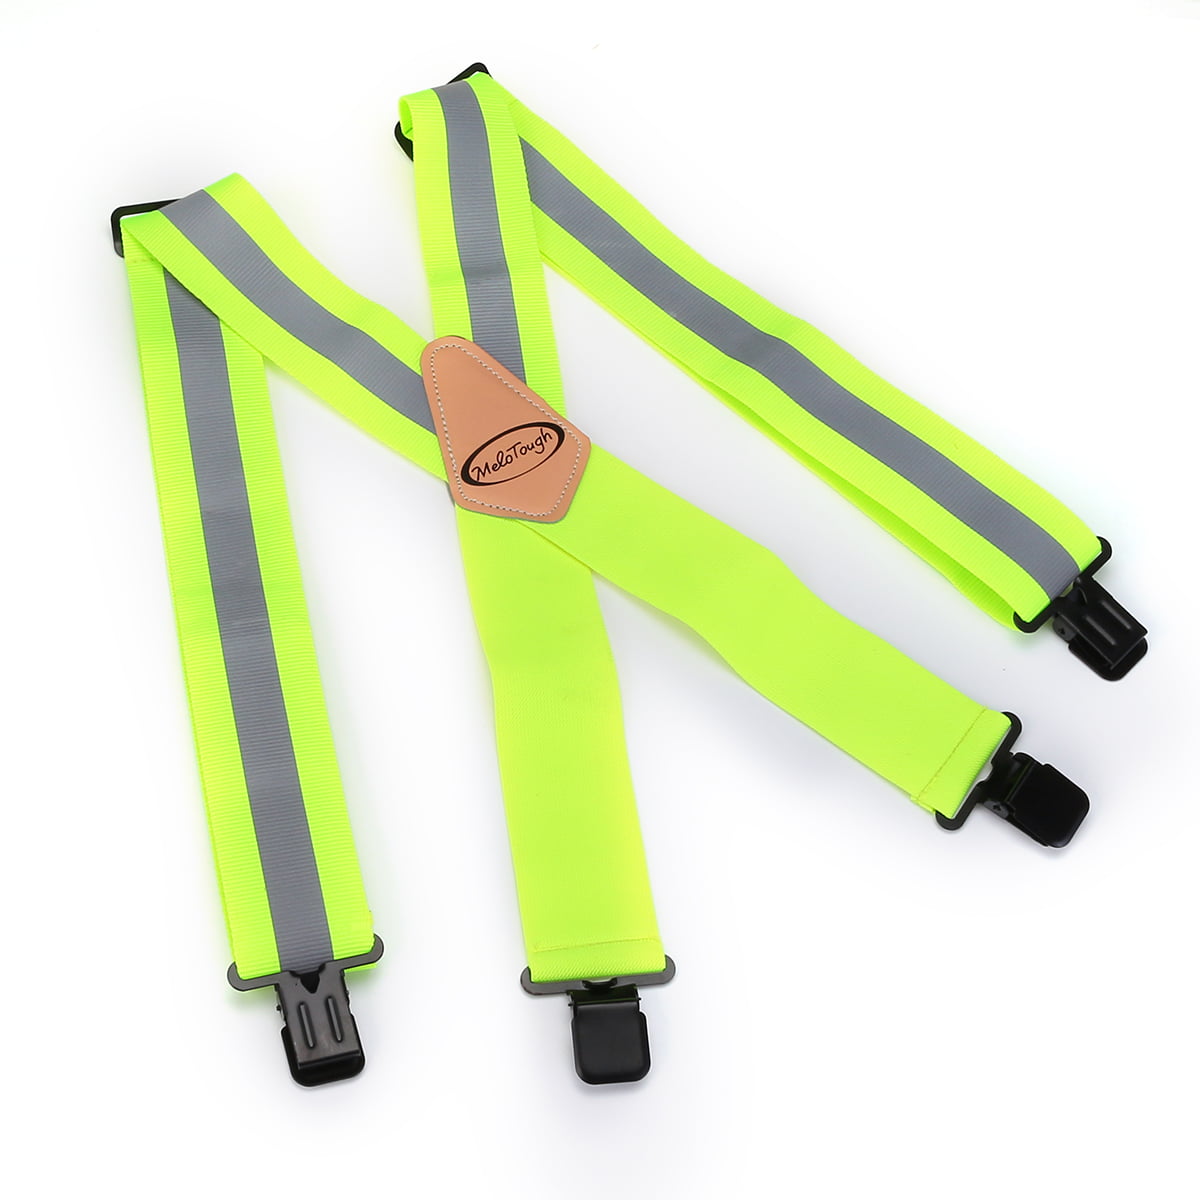 MELOTOUGH 2”Suspenders Tool Belt Braces Work Braces yardstick ruler design 